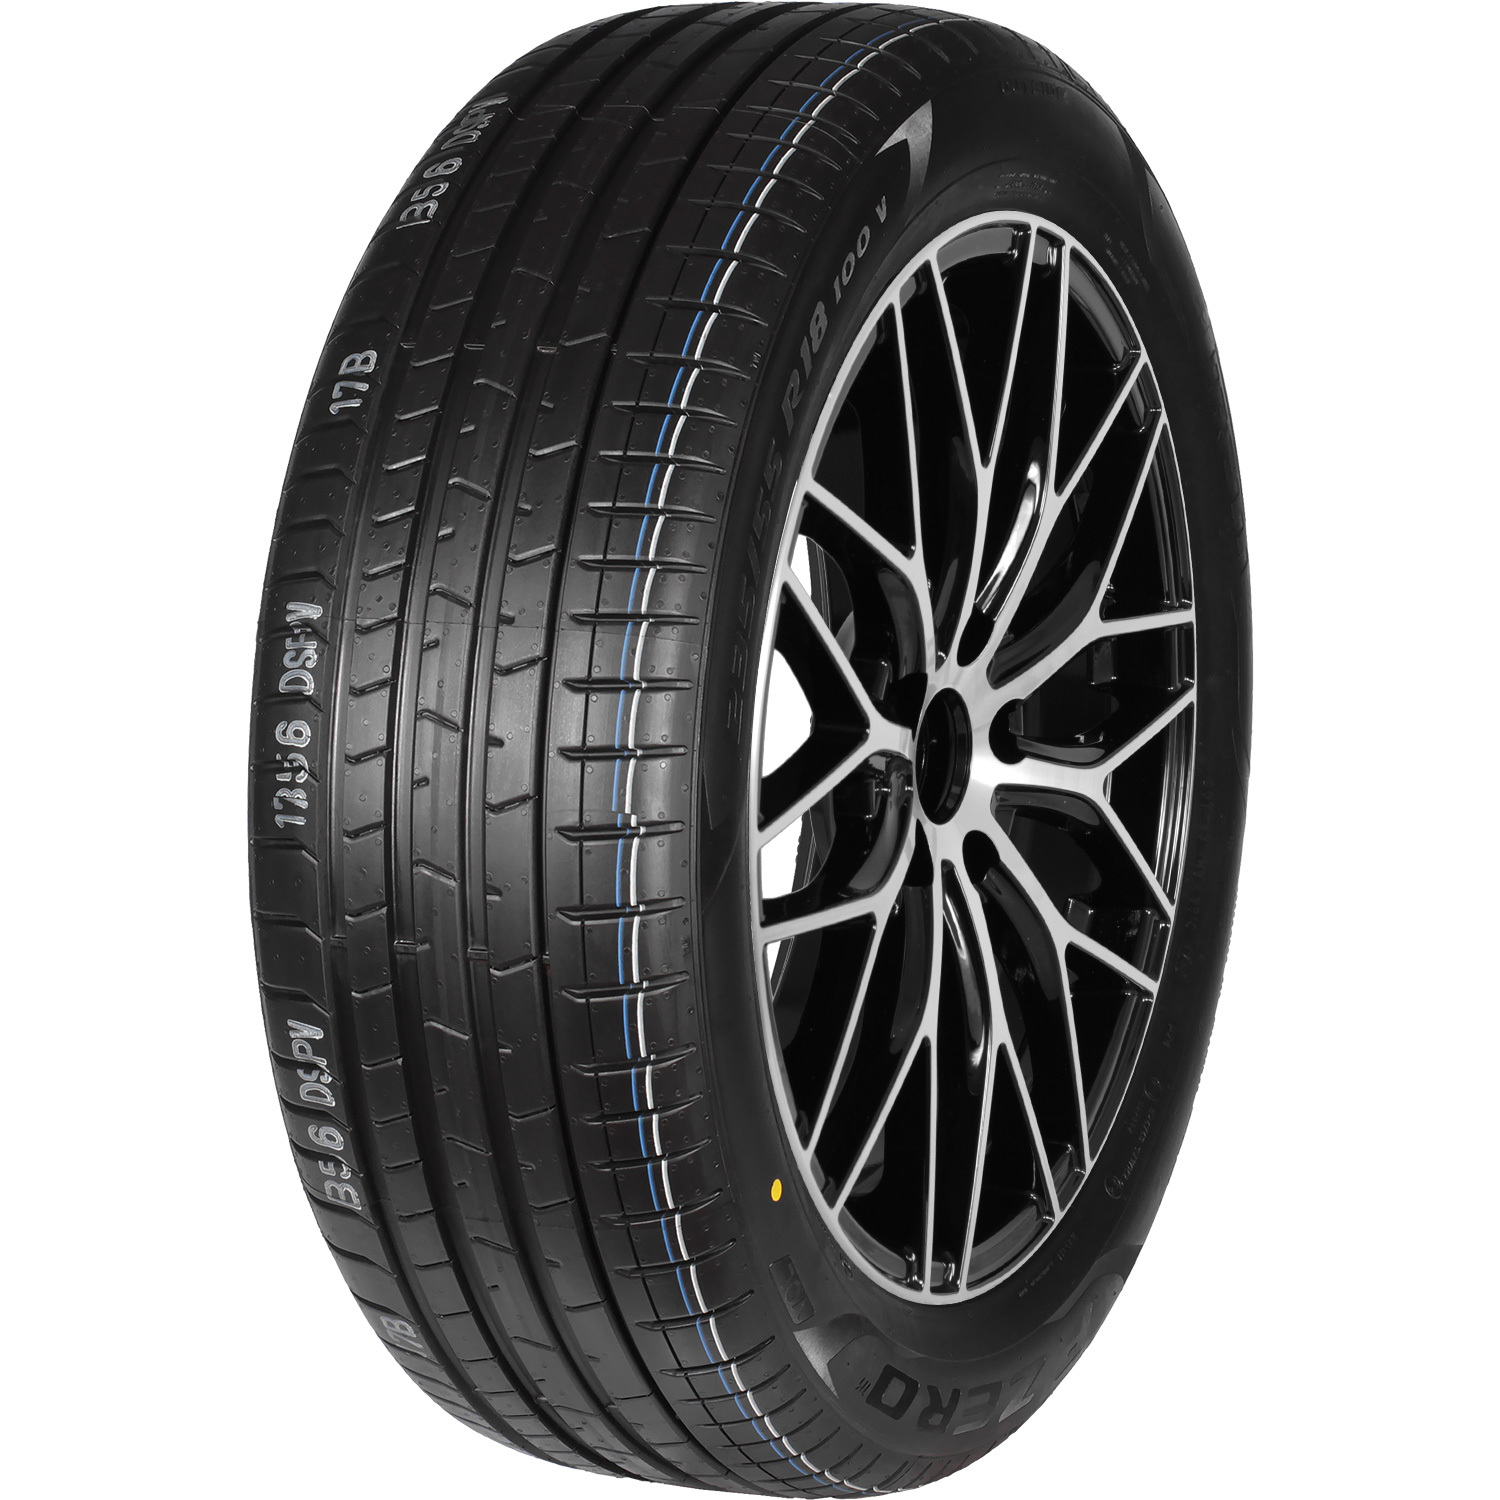 Автомобильная шина Pirelli P-Zero Luxury Saloon 245/50 R19 105W цена и фото